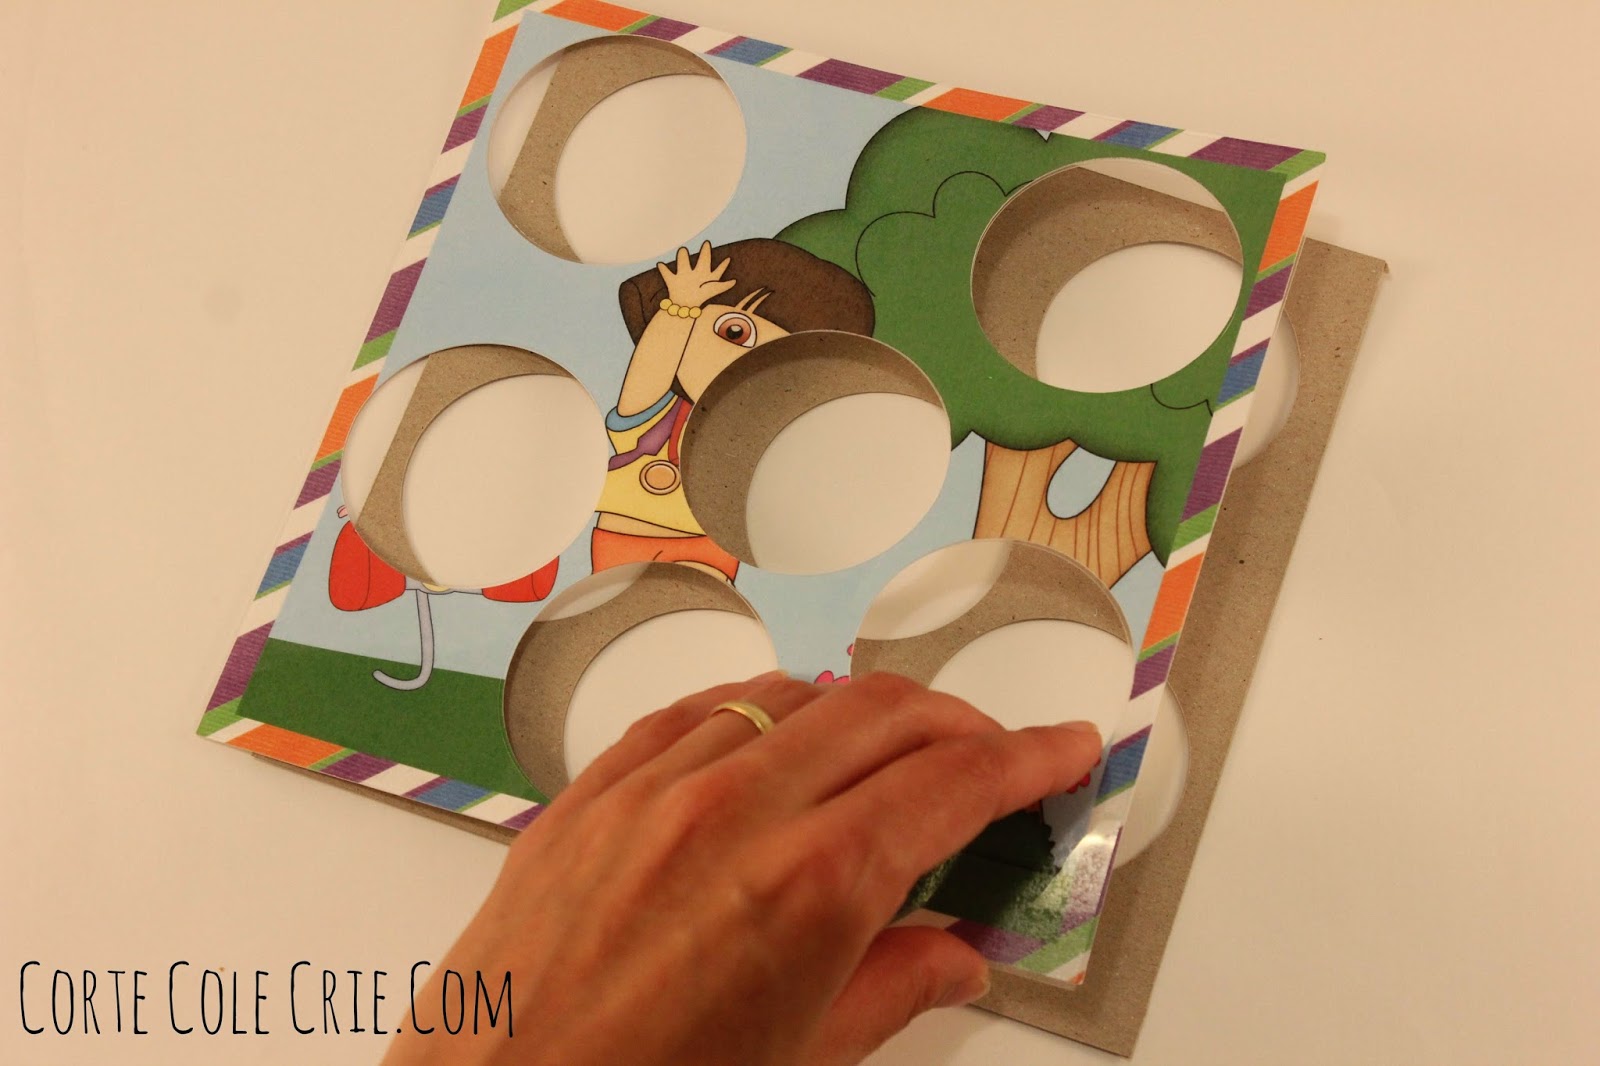 Corte Cole Crie: Como fazer um quebra-cabeça com tampa de papinha e um kit  Digital